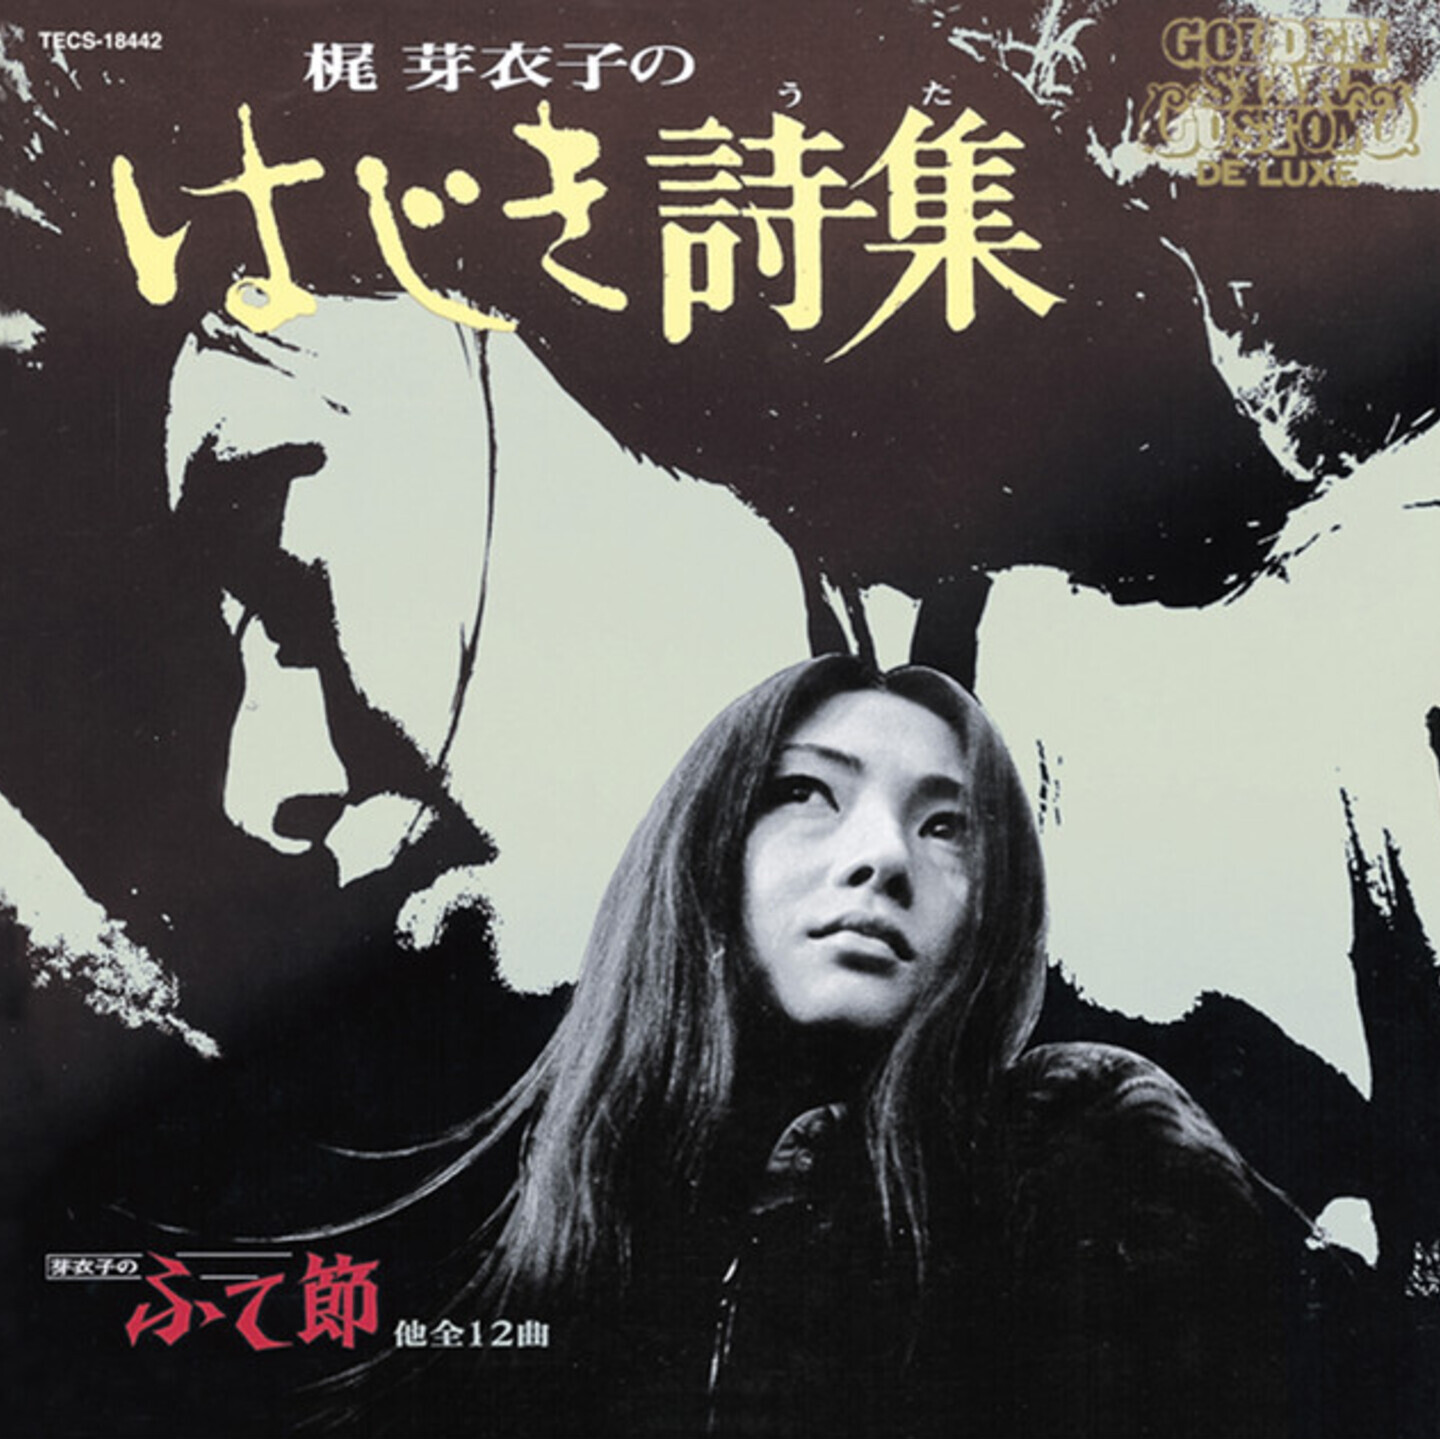 MEIKO KAJI - Hajiki Uta Deluxe Gatefold LP Edition with 2p Insert and OBI Black Vinyl